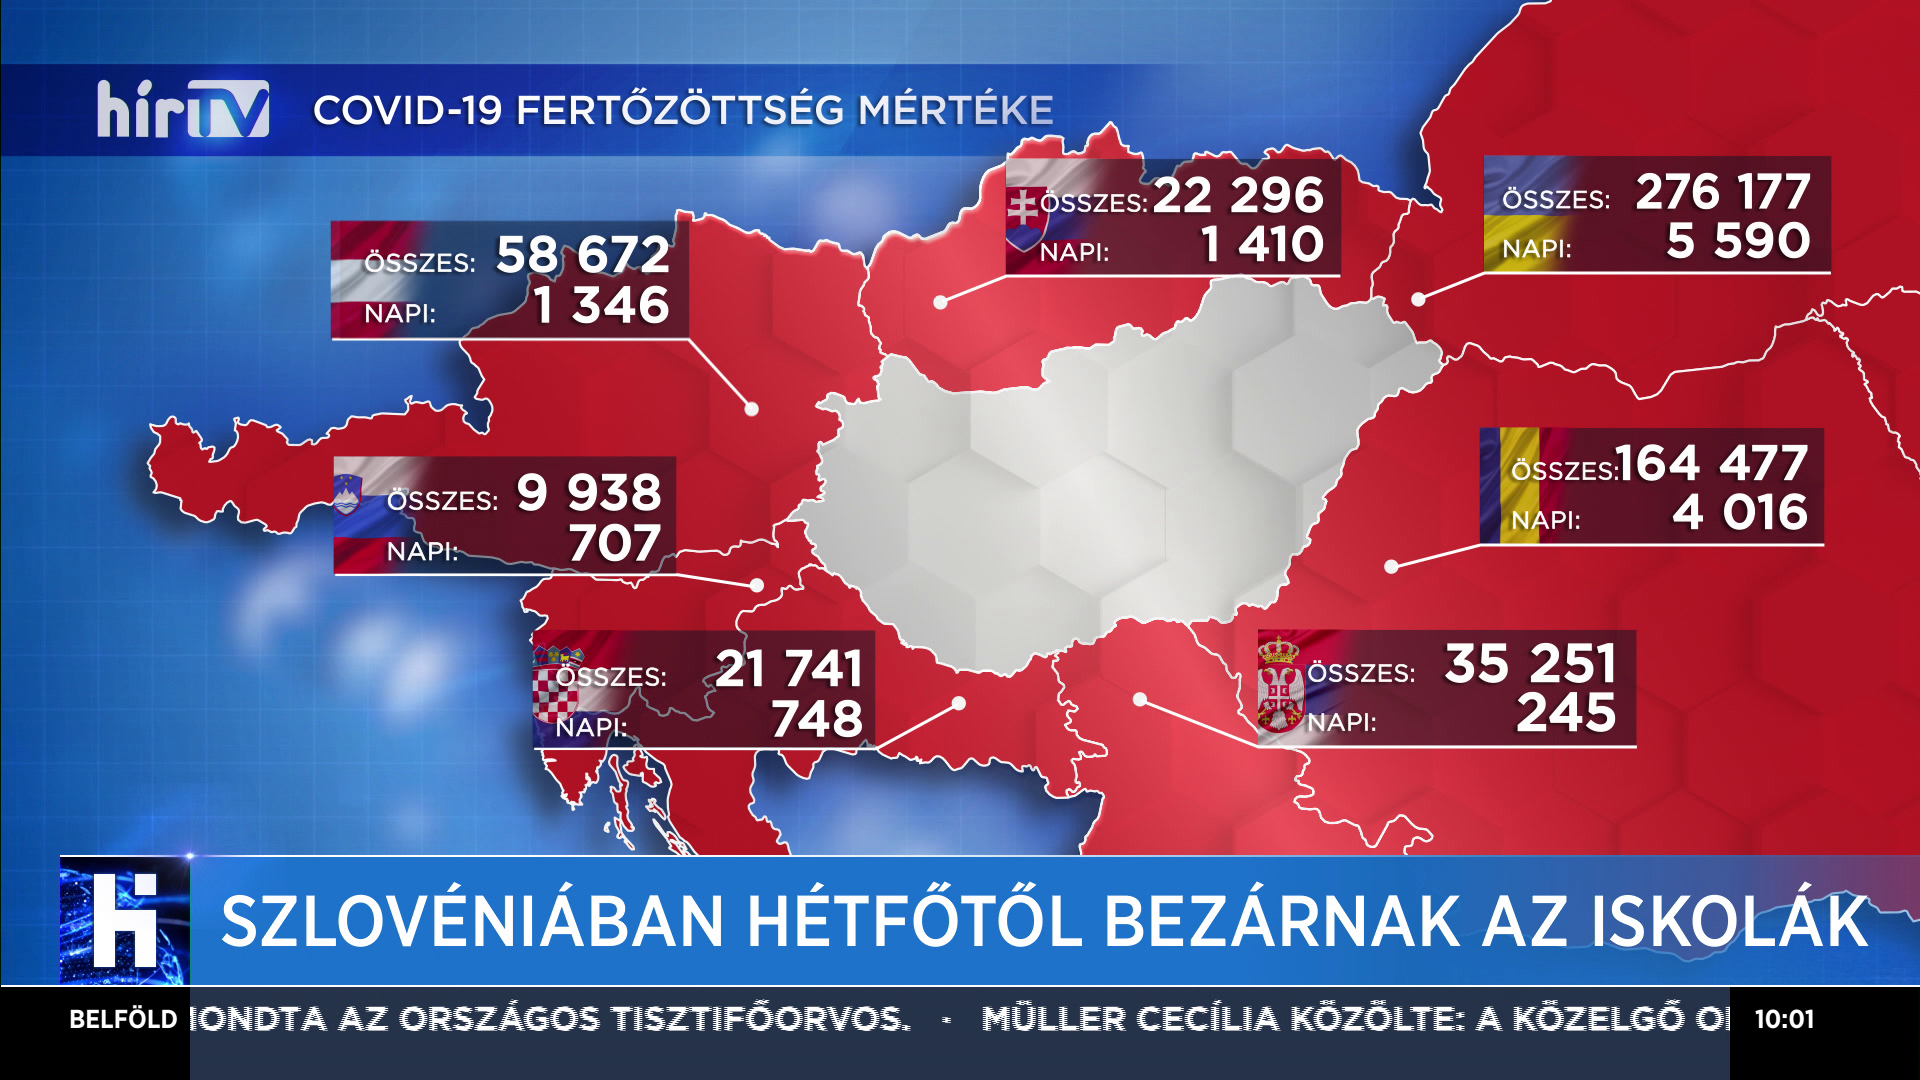 Szlovéniában hétfőtől bezárnak az iskolák